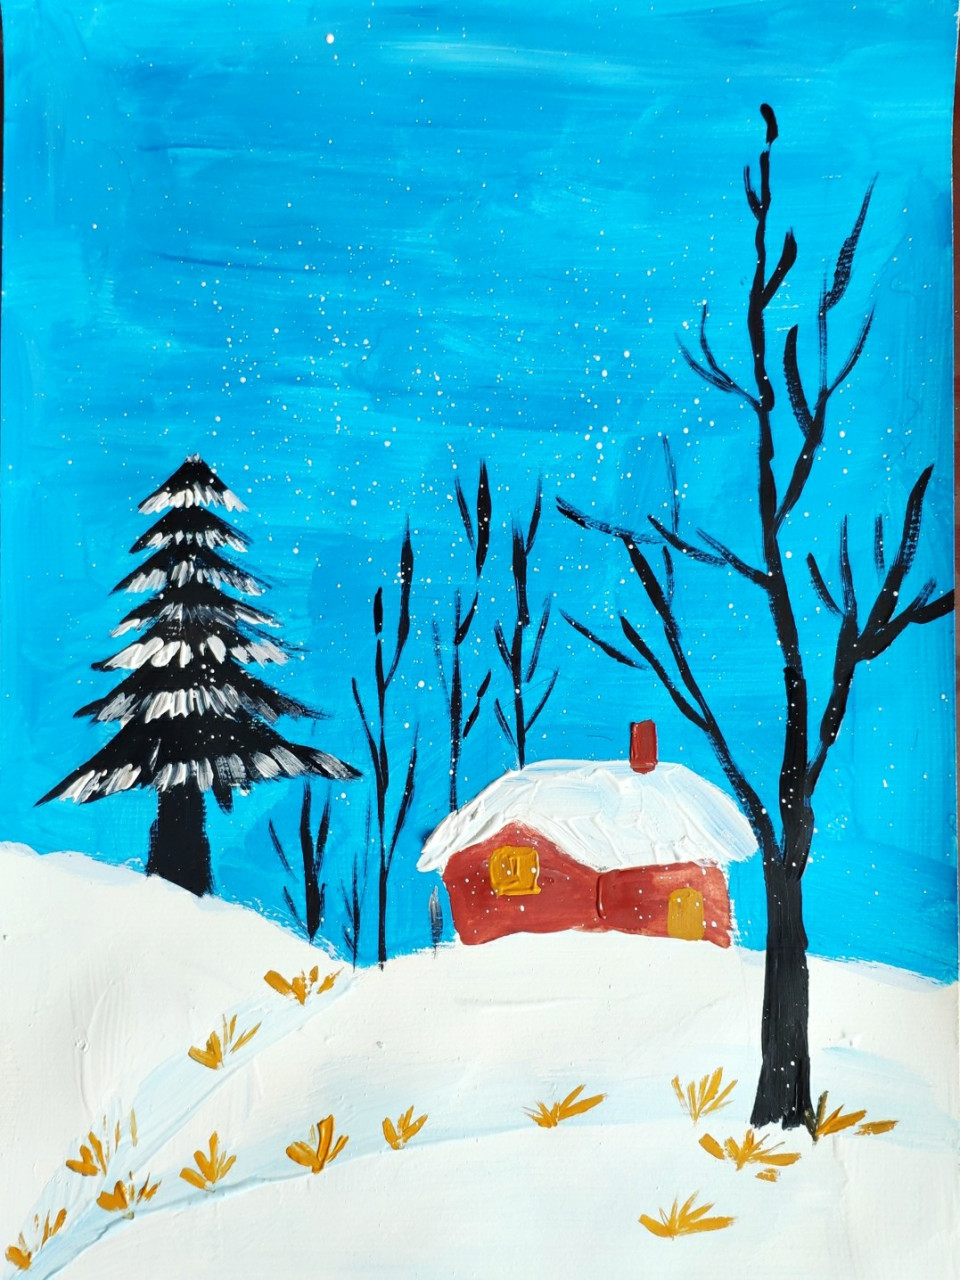 《冬日》附步骤图 小学生寒假作业,动手画一幅美丽的冬天,儿童水粉画